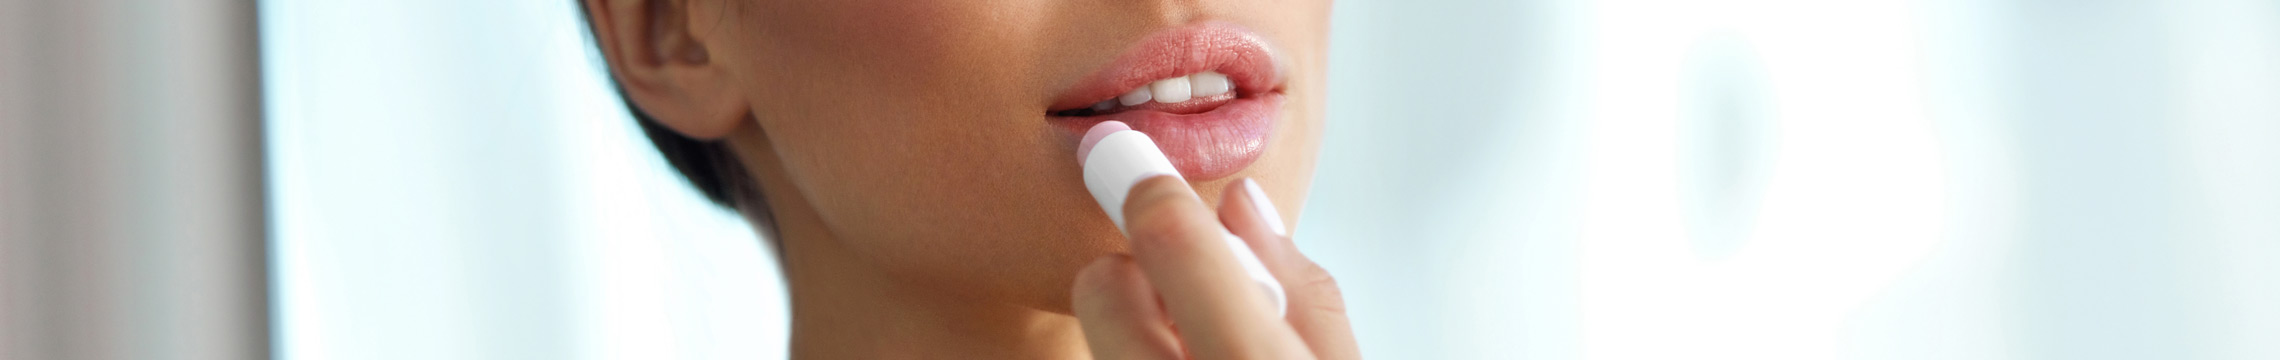 A young woman applies lip balm in a bathroom mirror